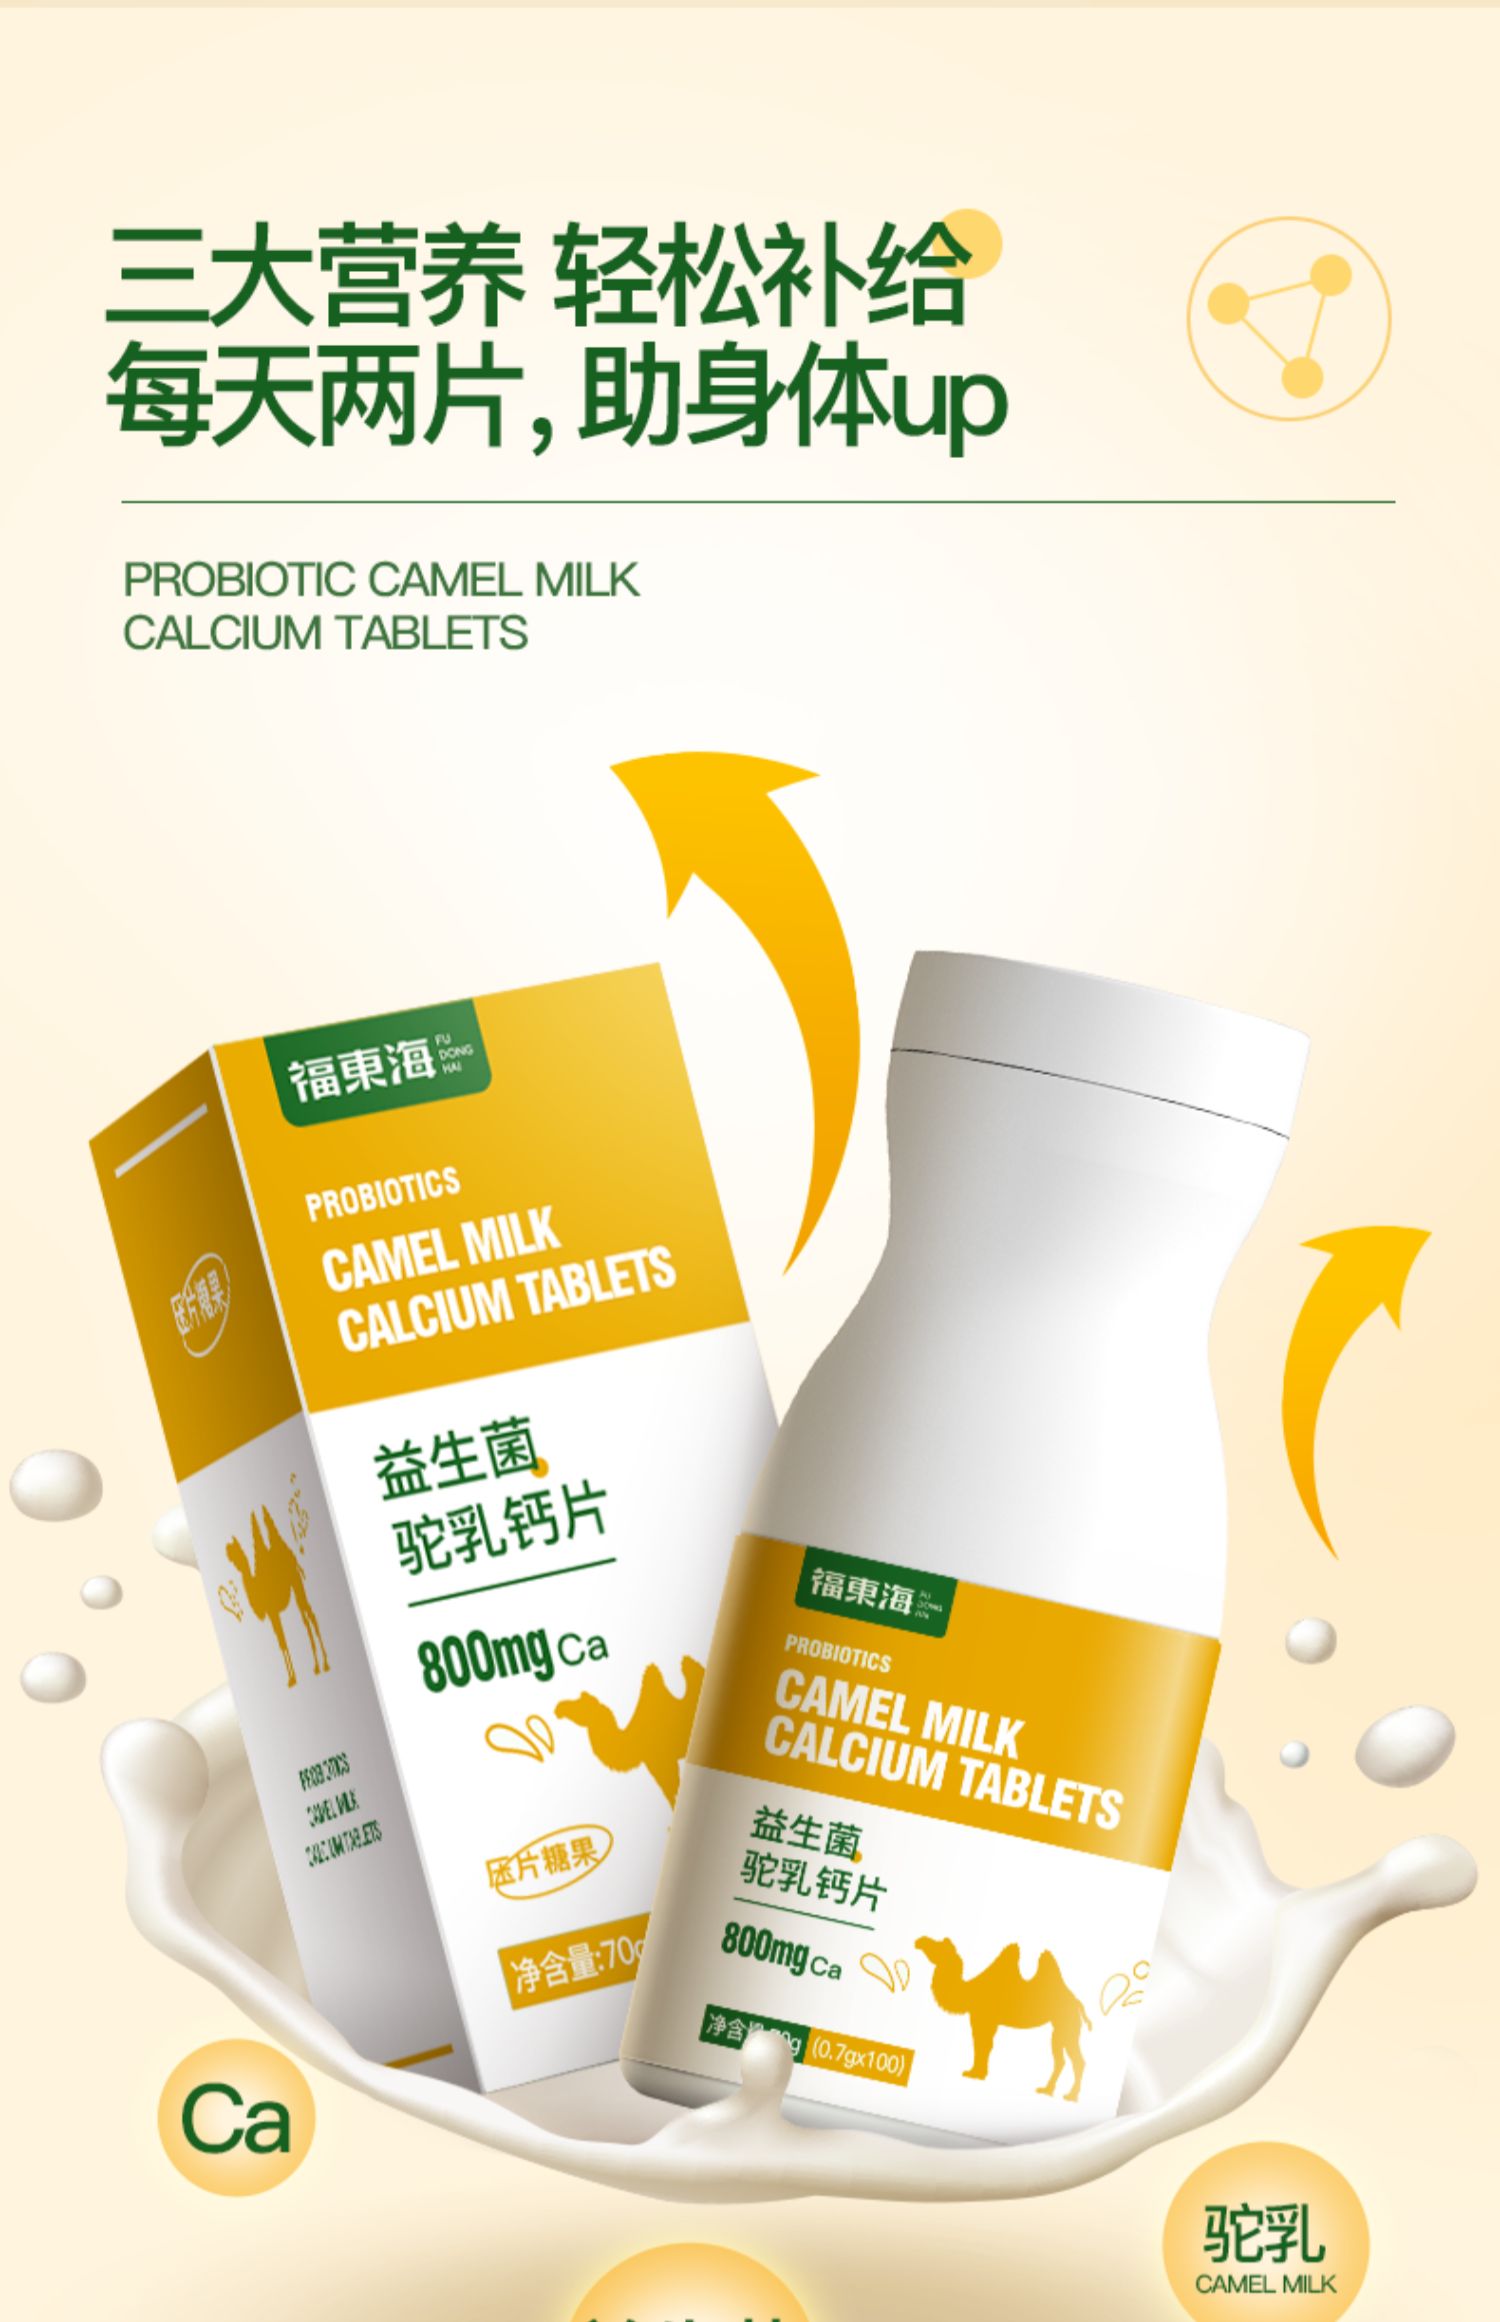 【福东海】FDH12010009-2驼乳钙片70克/盒